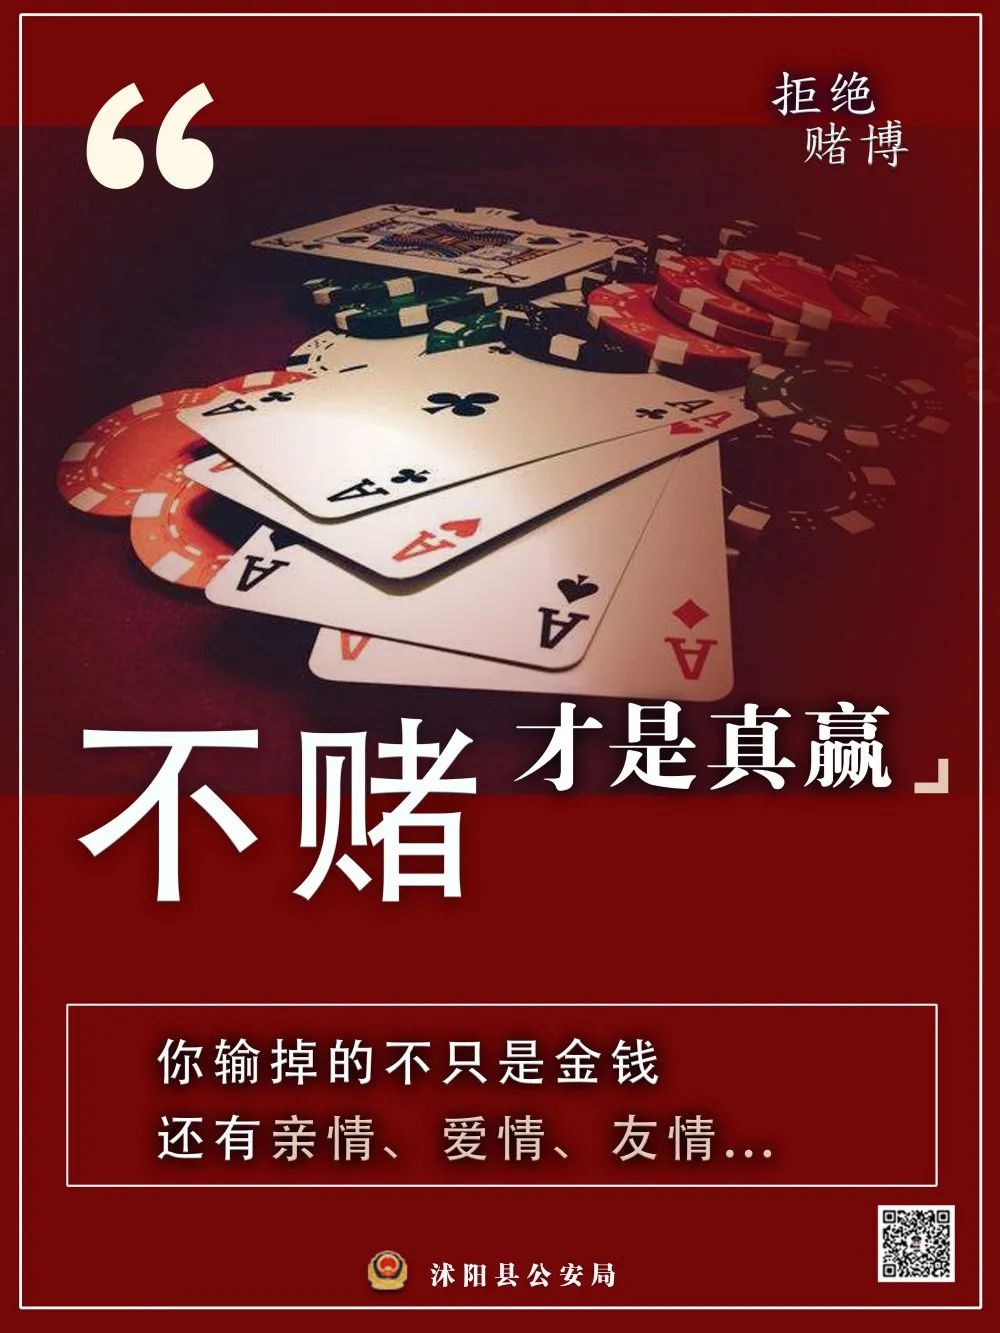 赌博的危害宣传海报图片